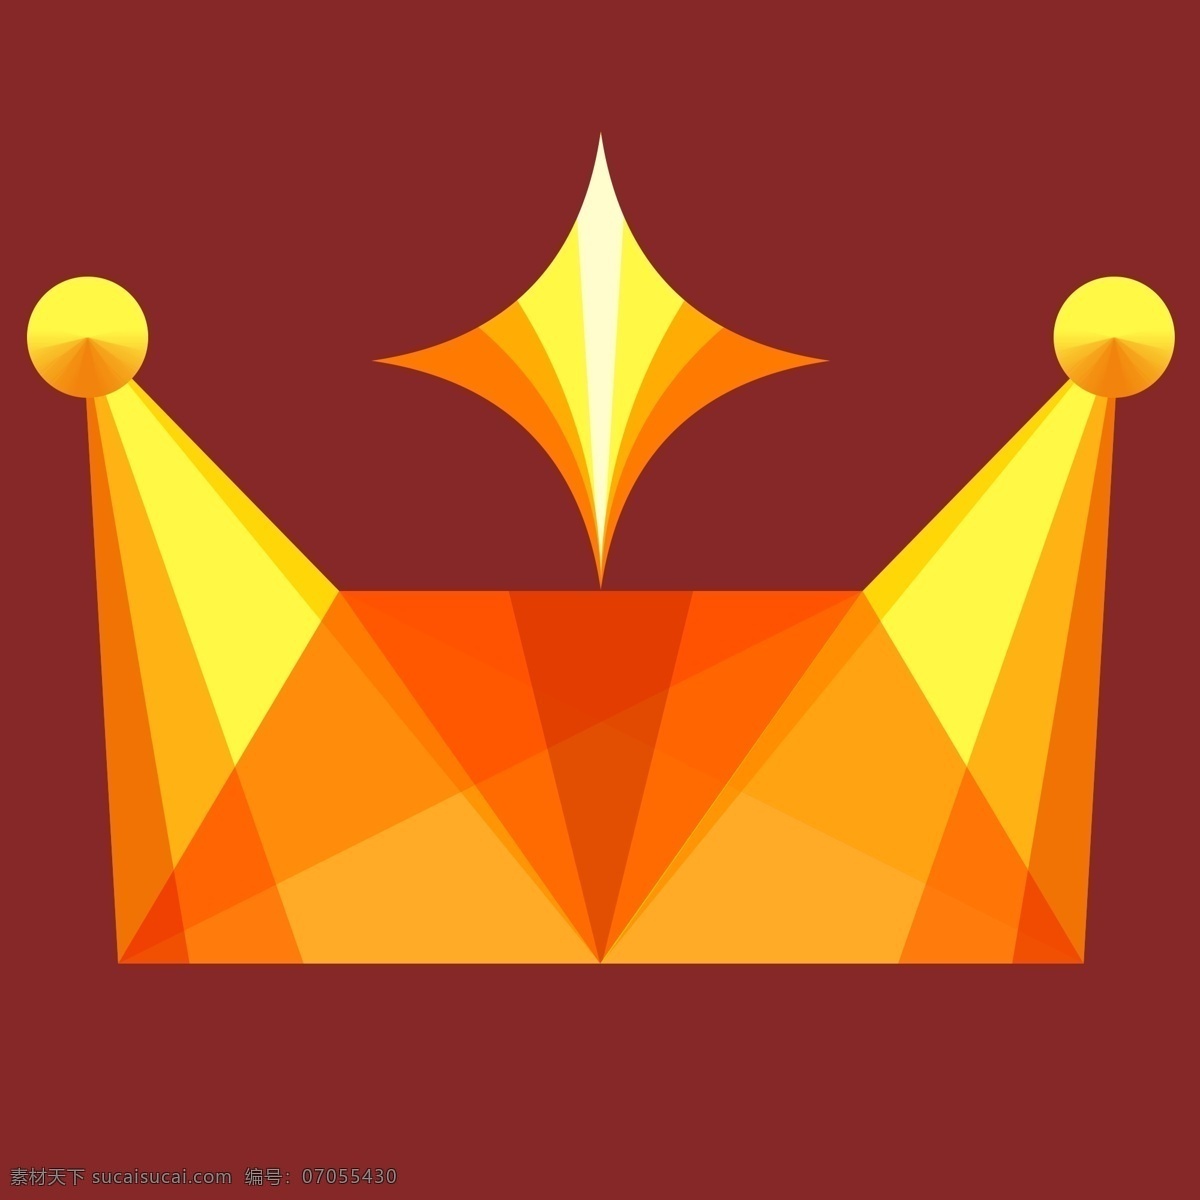 多彩 头 戴 星形 皇冠 图标 金黄色 头戴 立体 至高荣耀 皇室贵族 vip 会员 色彩多样 沉甸甸